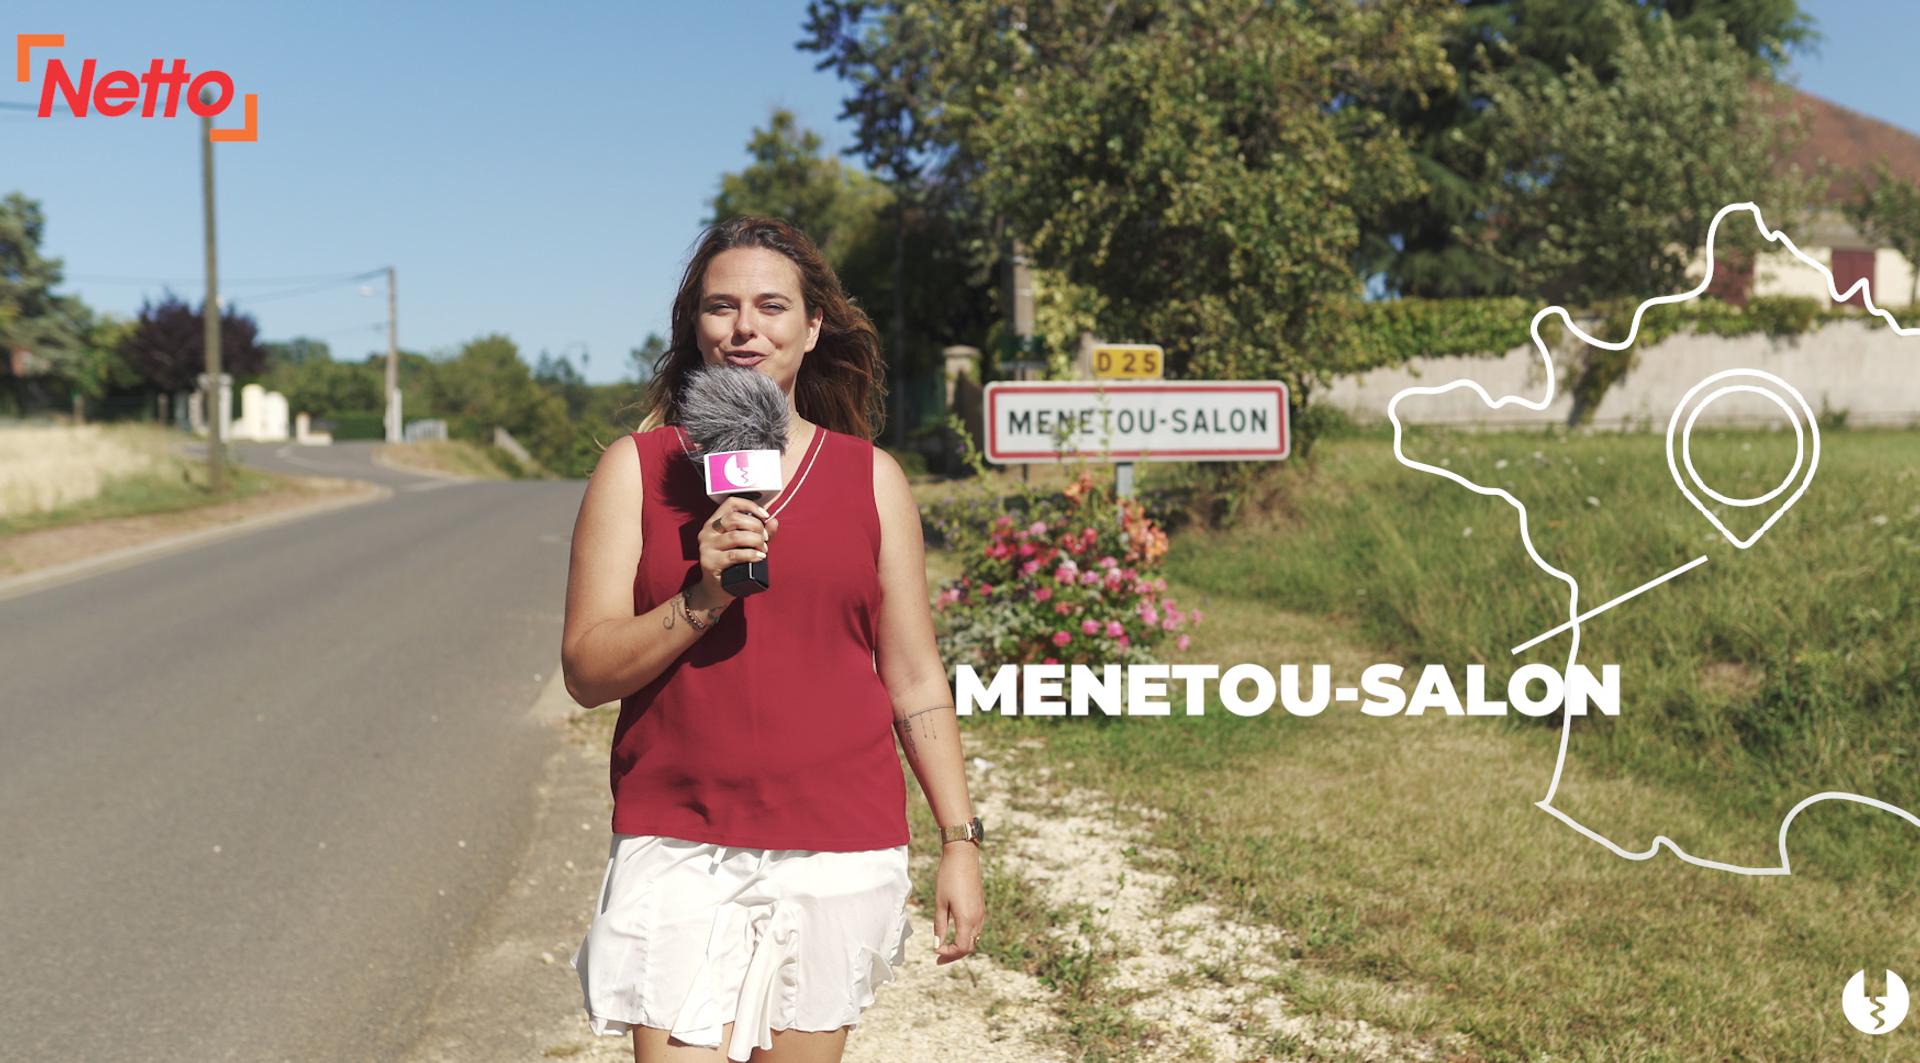 Foire aux vins NETTO 2020 - Etape 1 : Menetou-Salon